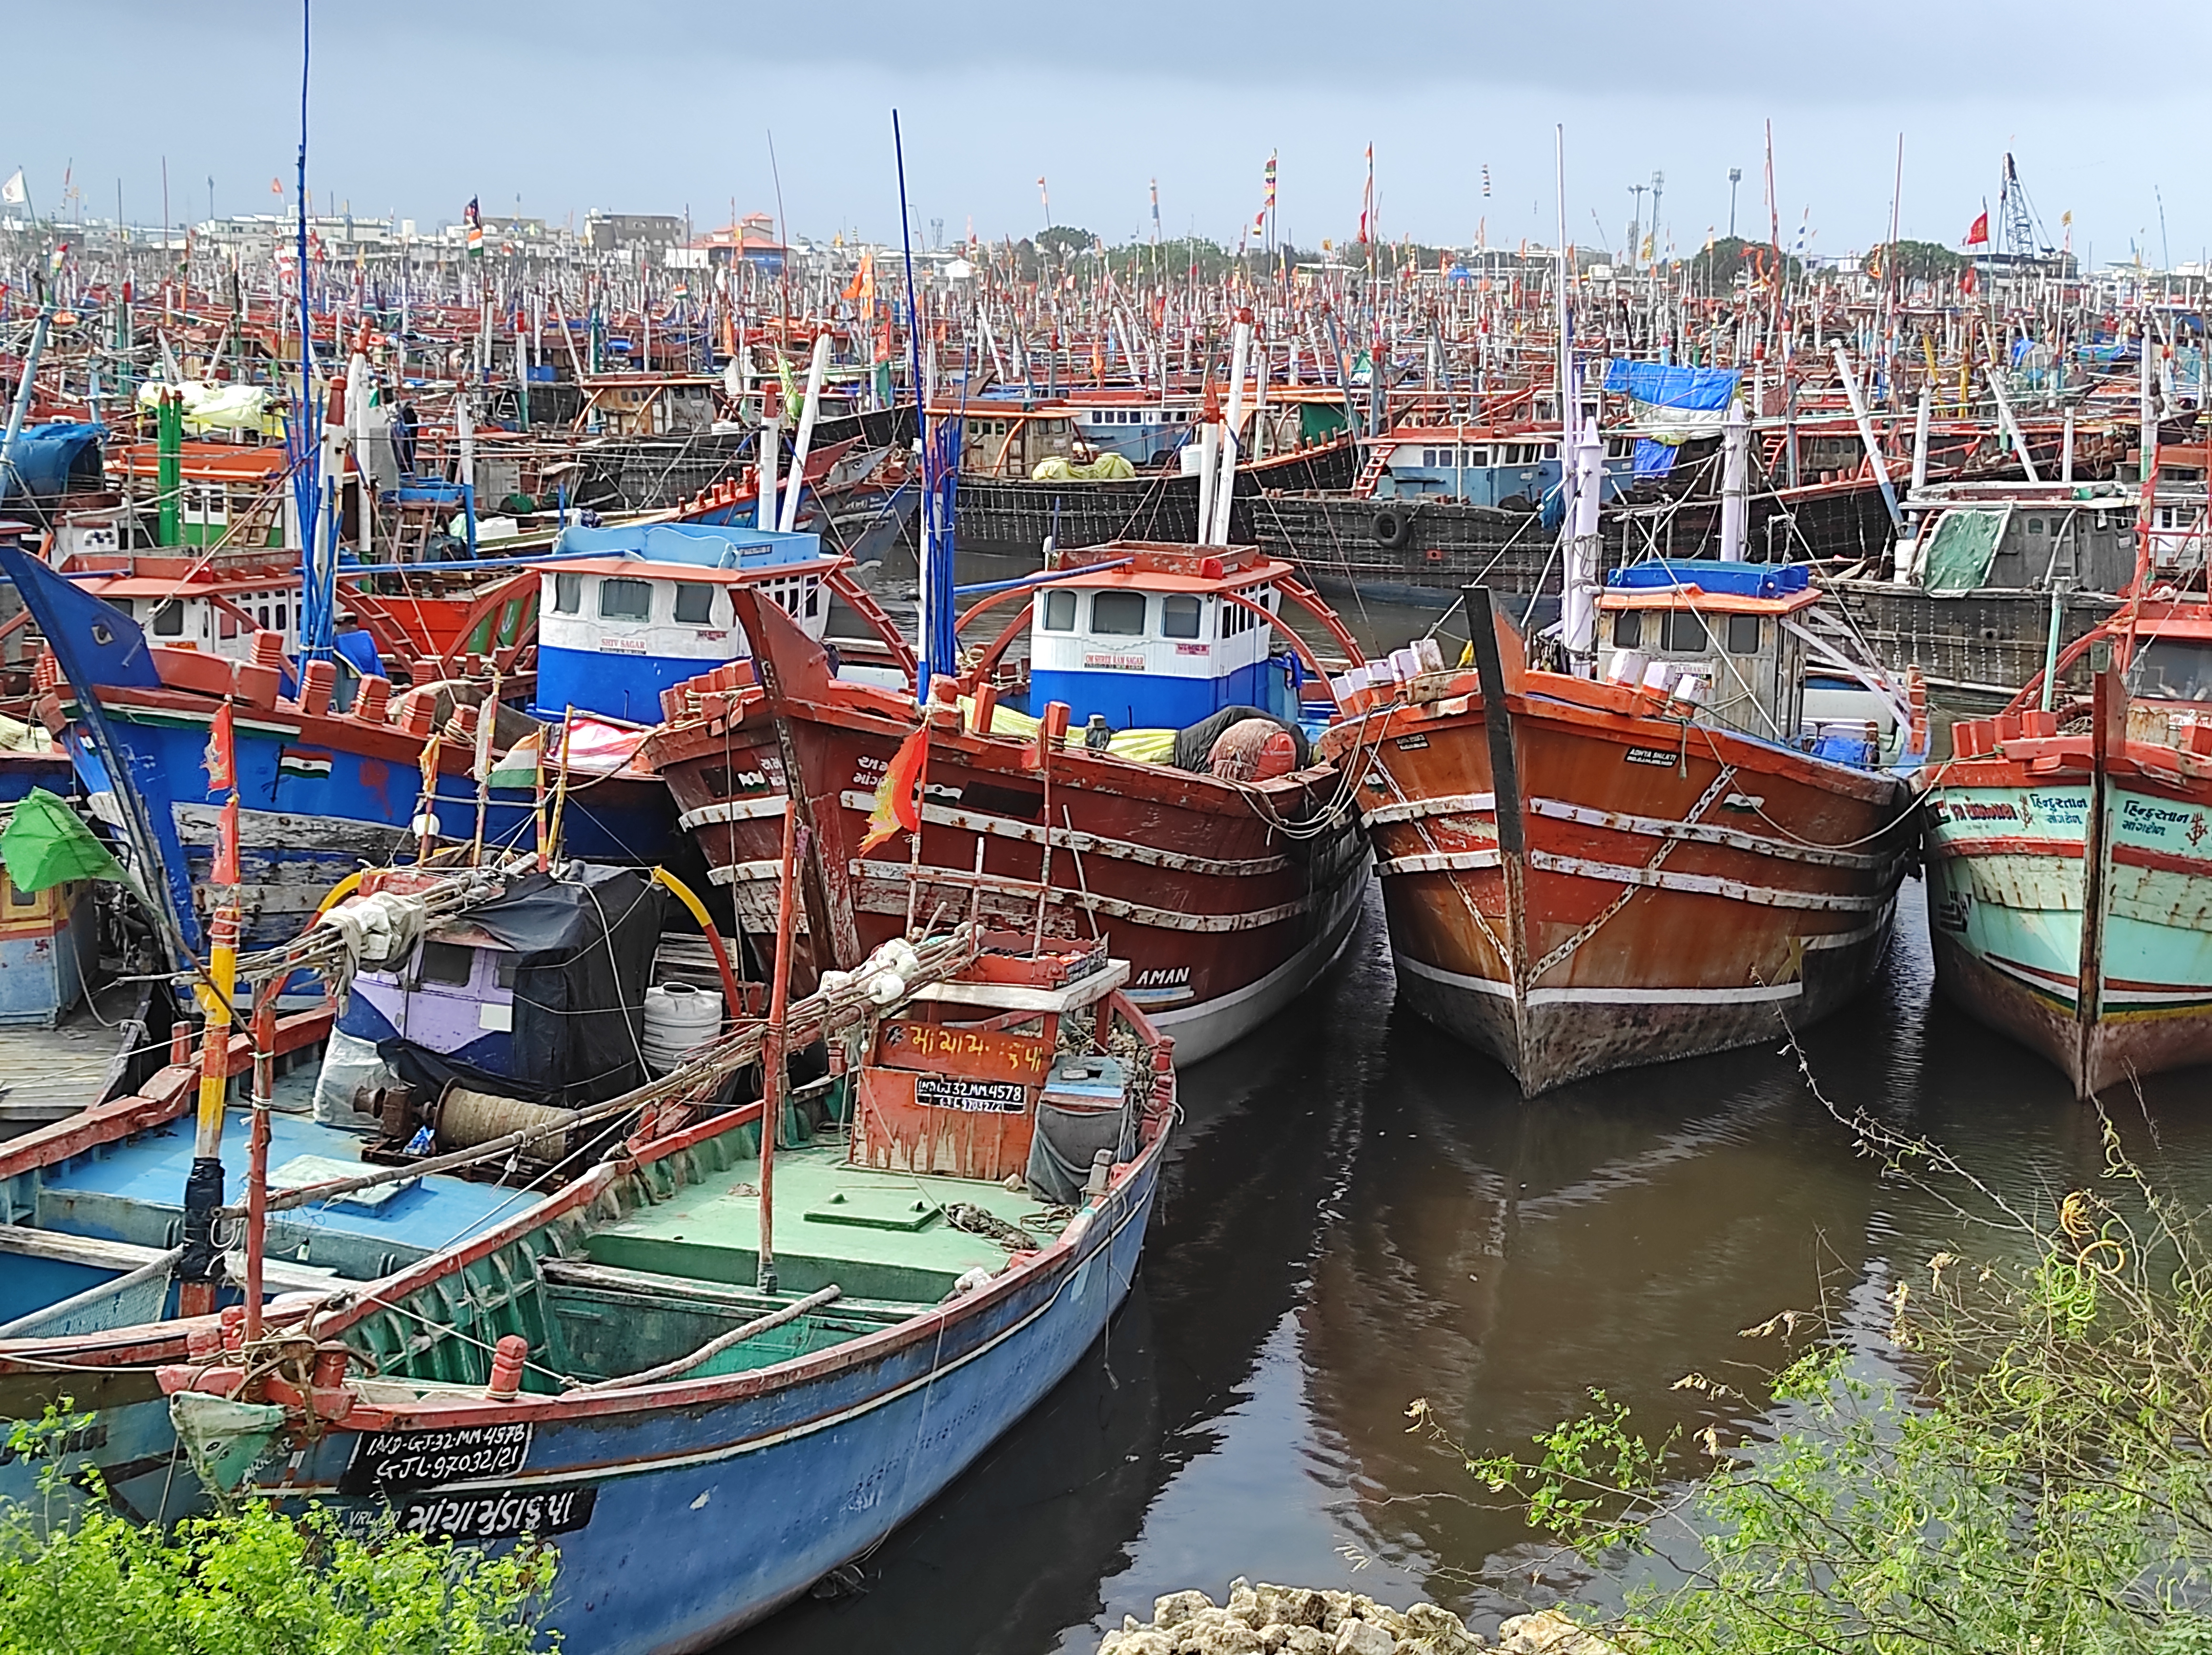 માછલીઓની નિકાસમાં ગુજરાત પ્રથમ નિકાસ થતા ક્ષેત્રોમાં ફિશરીઝ ઉધોગ દસમા ક્રમે